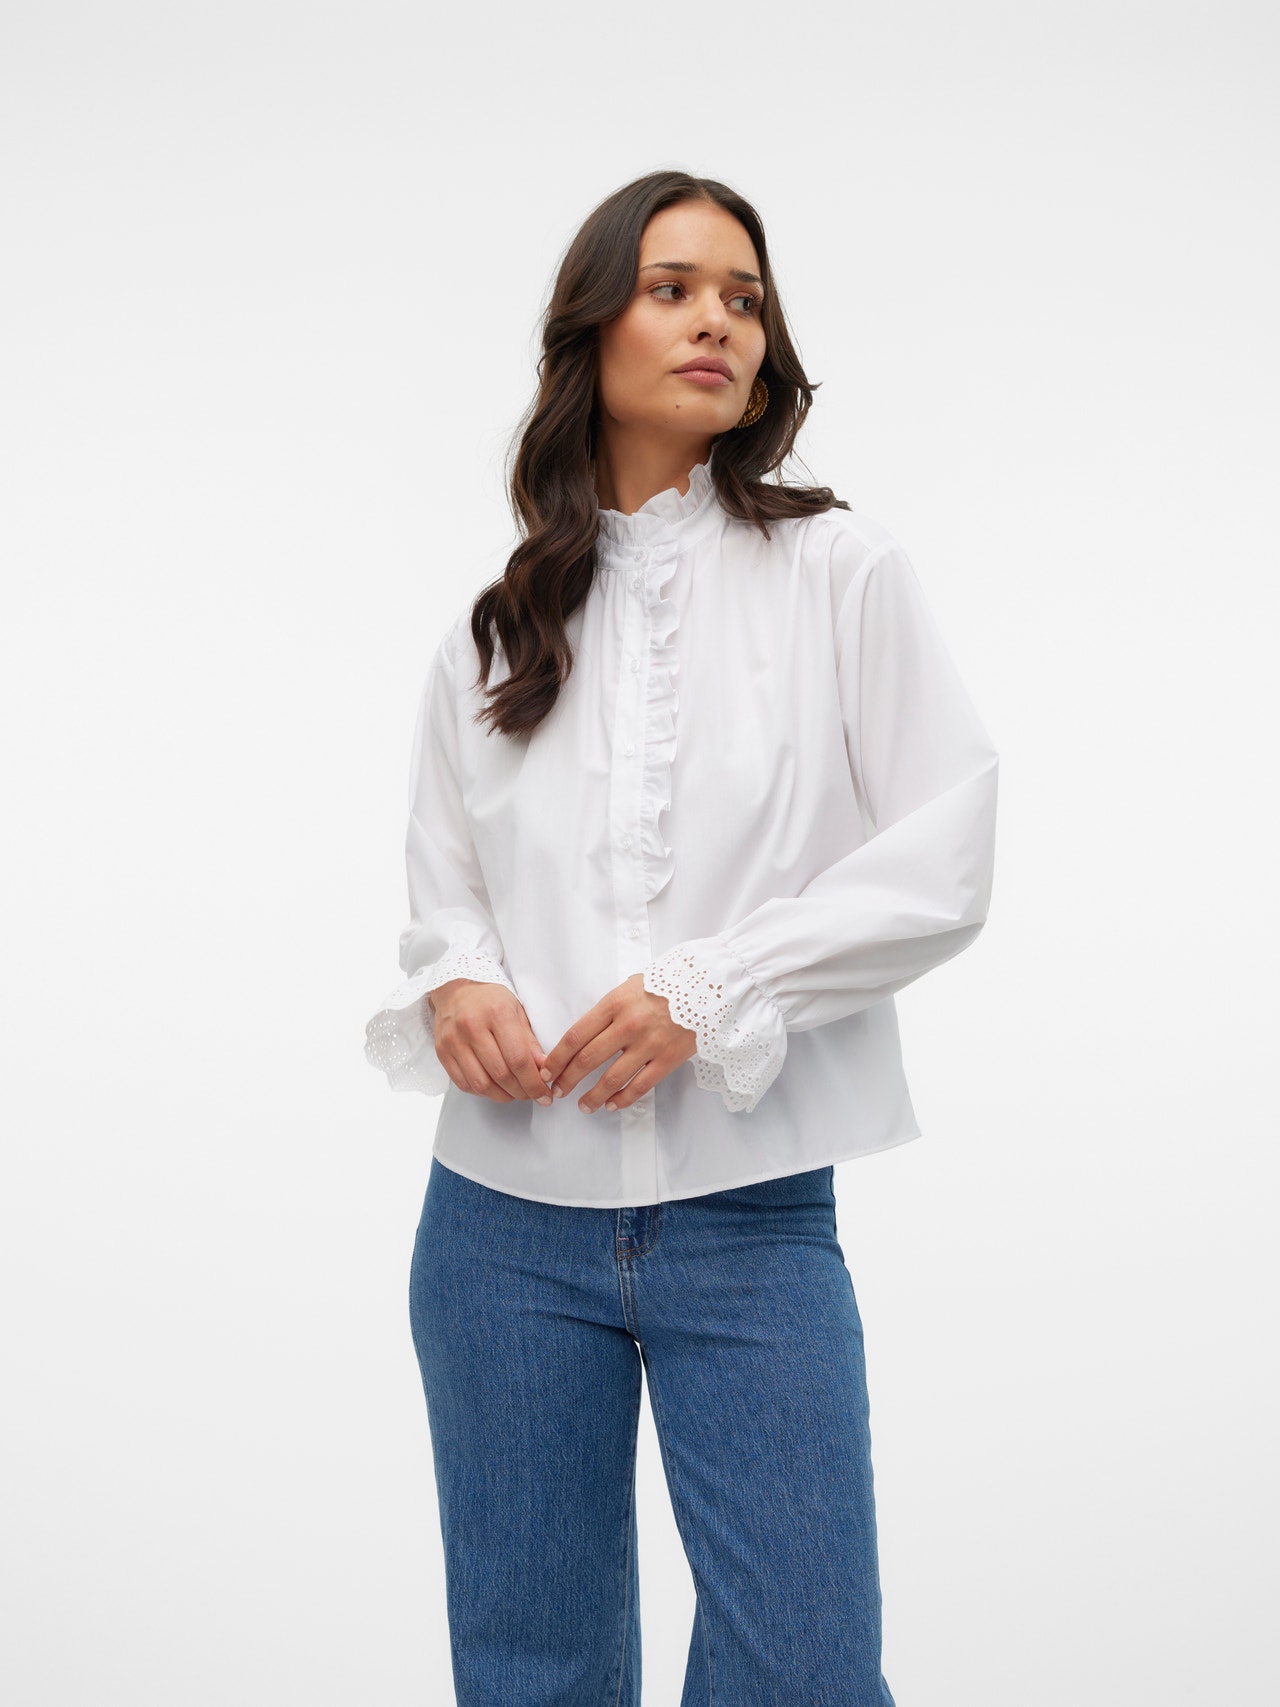 Vero Moda VMKATRIN Shirt -Bright White - 10324203